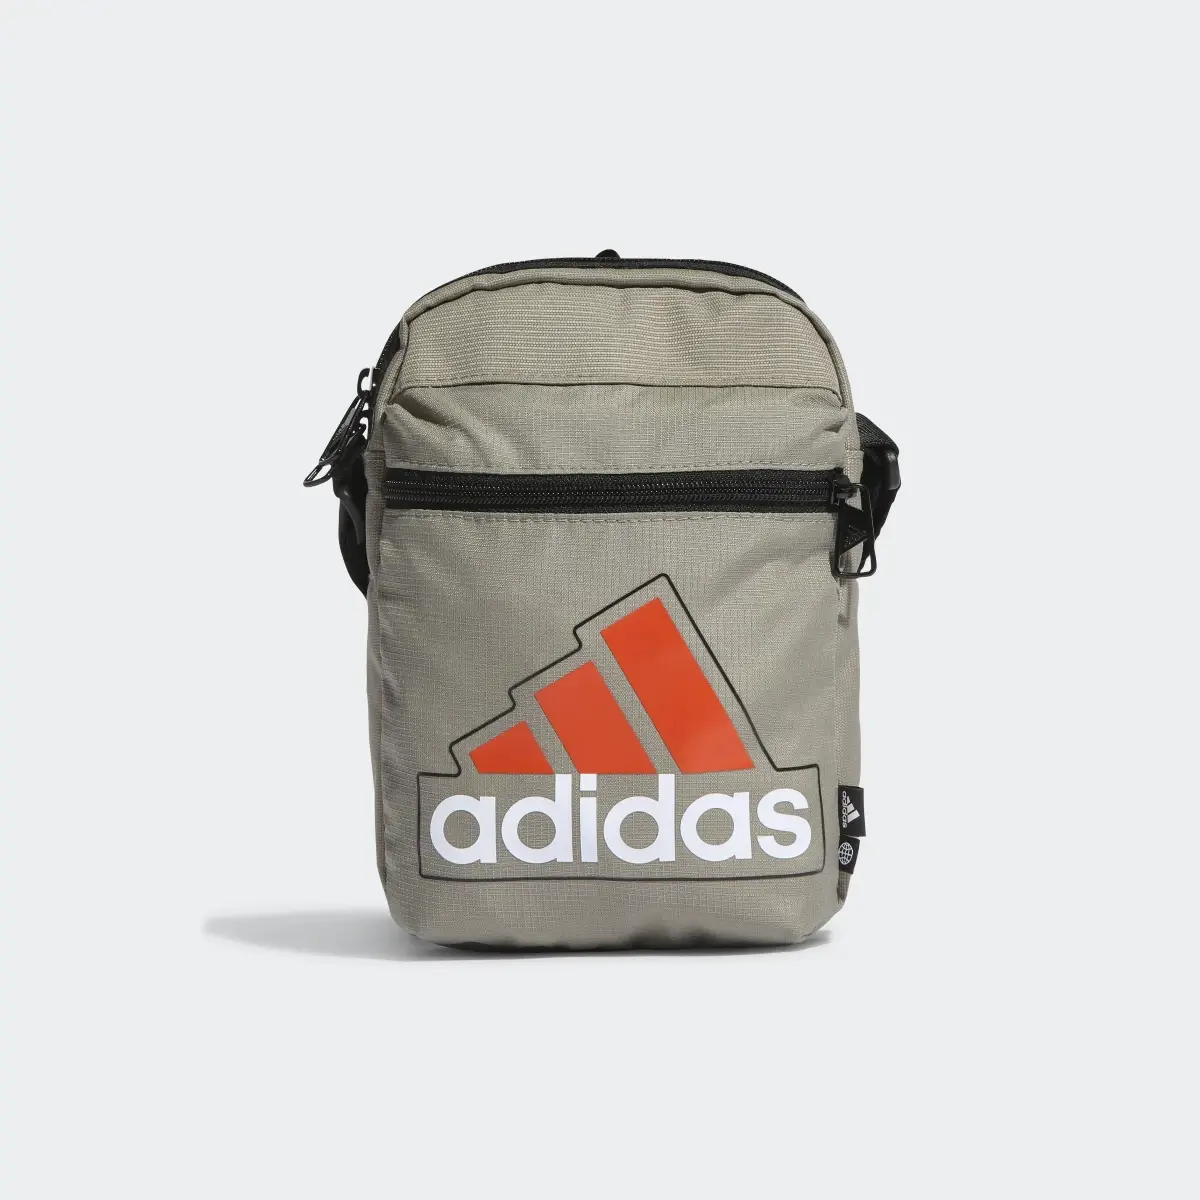 Adidas Essentials Seasonal Organizer Tasche. 2